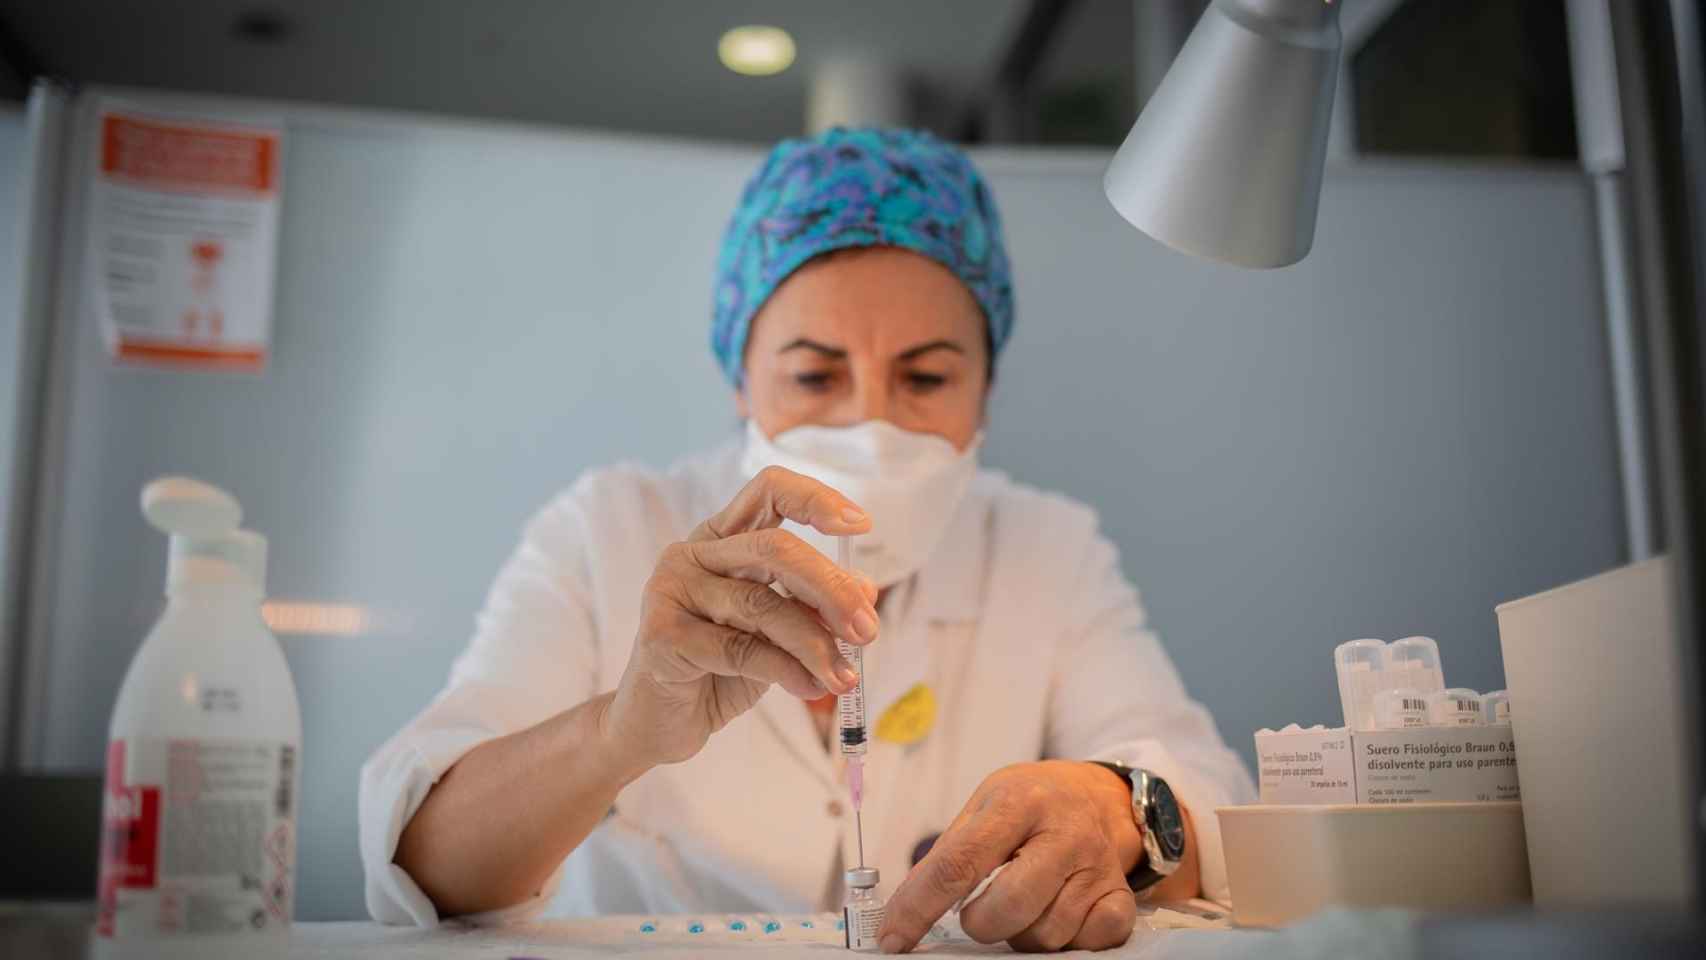 Una enfermera prepara la vacuna Pfizer-BioNtech contra el COVID-19 / EUROPA PRESS - David Zorrakino